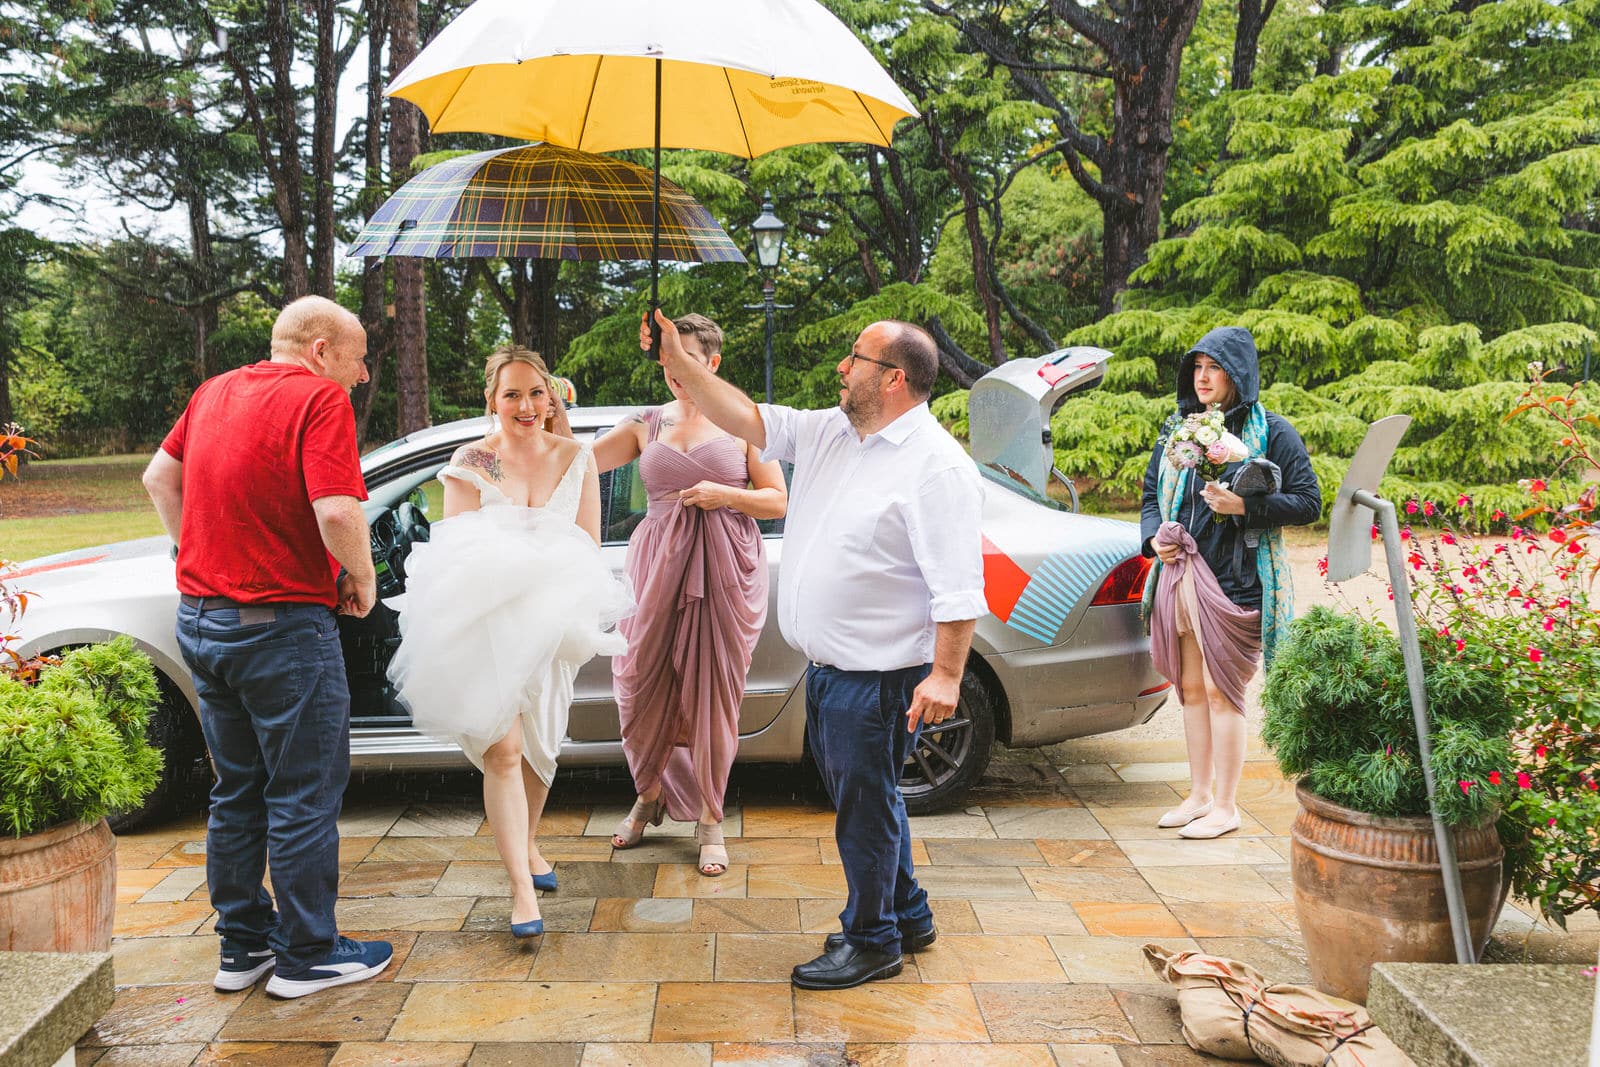 Umbrellas on rainy wet wedding day